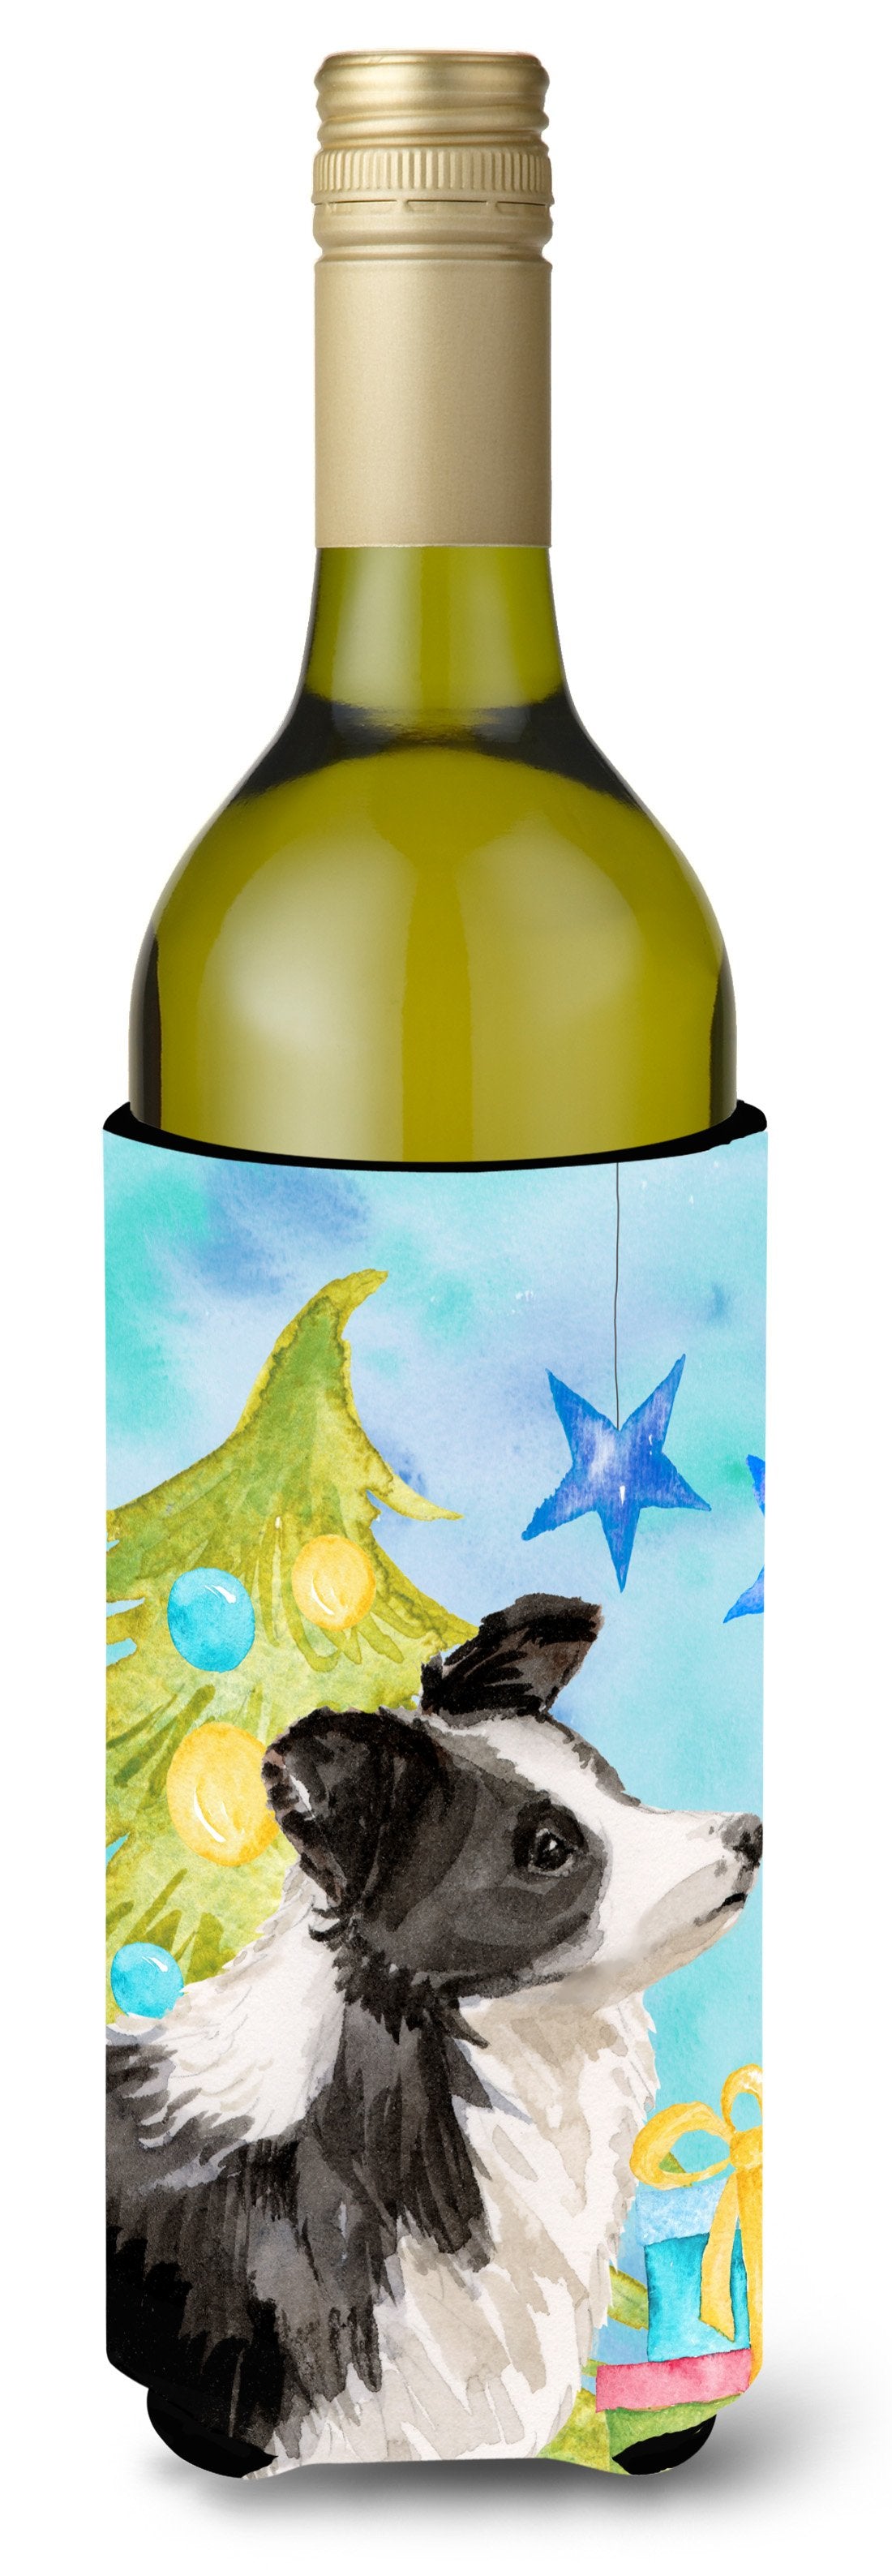 Border Collie Christmas Wine Bottle Beverge Insulator Hugger BB9408LITERK by Caroline's Treasures